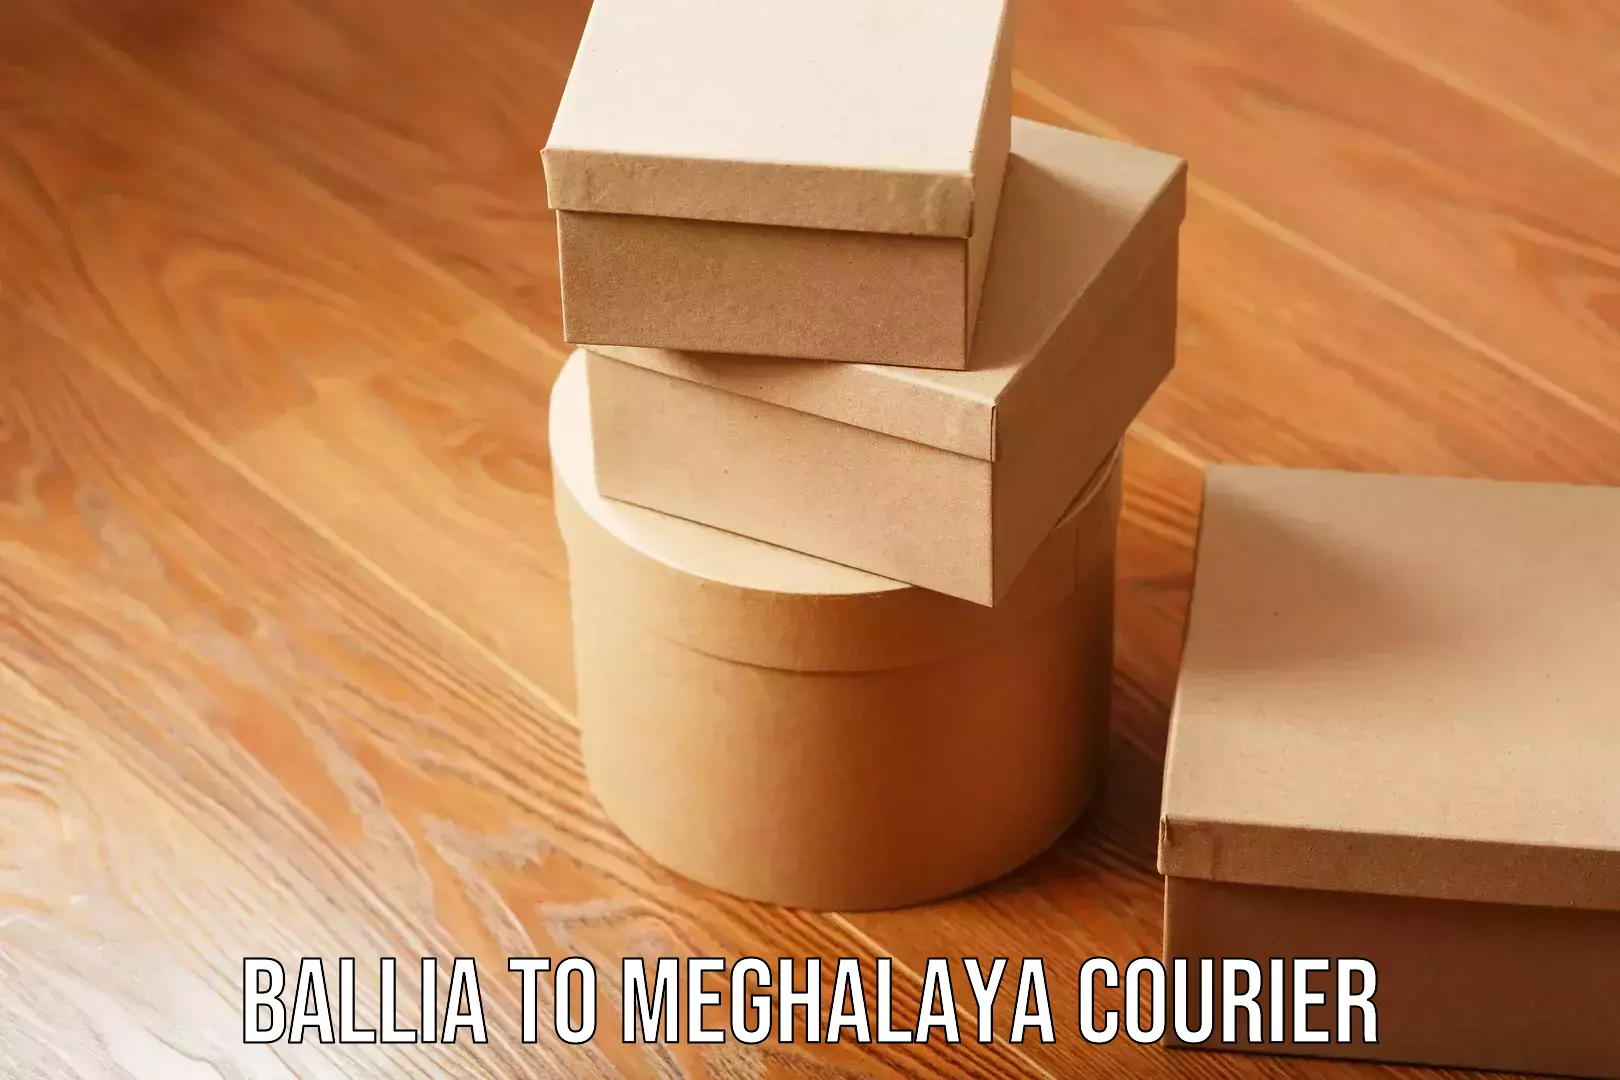 Optimized shipping routes Ballia to Meghalaya